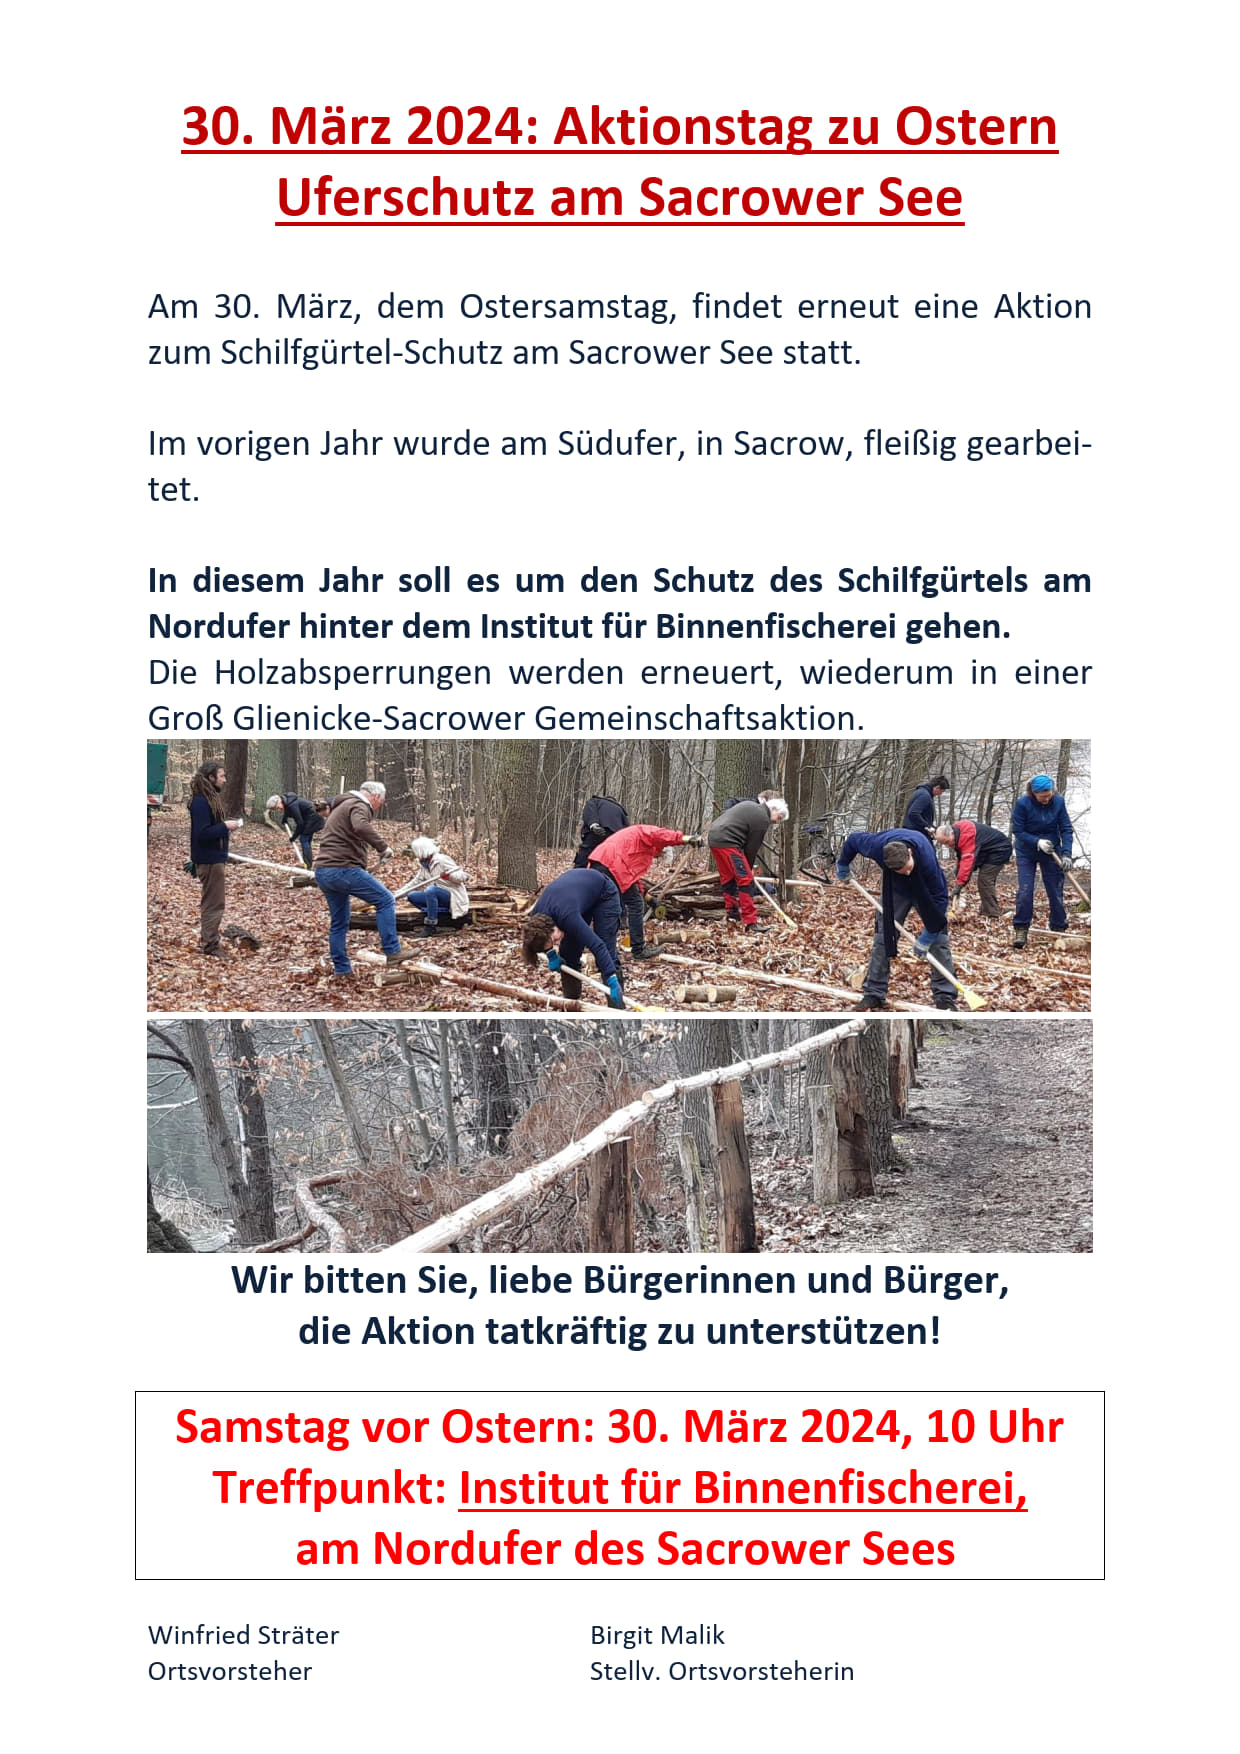 03-30 Uferschutz-Aktion Sacrower See